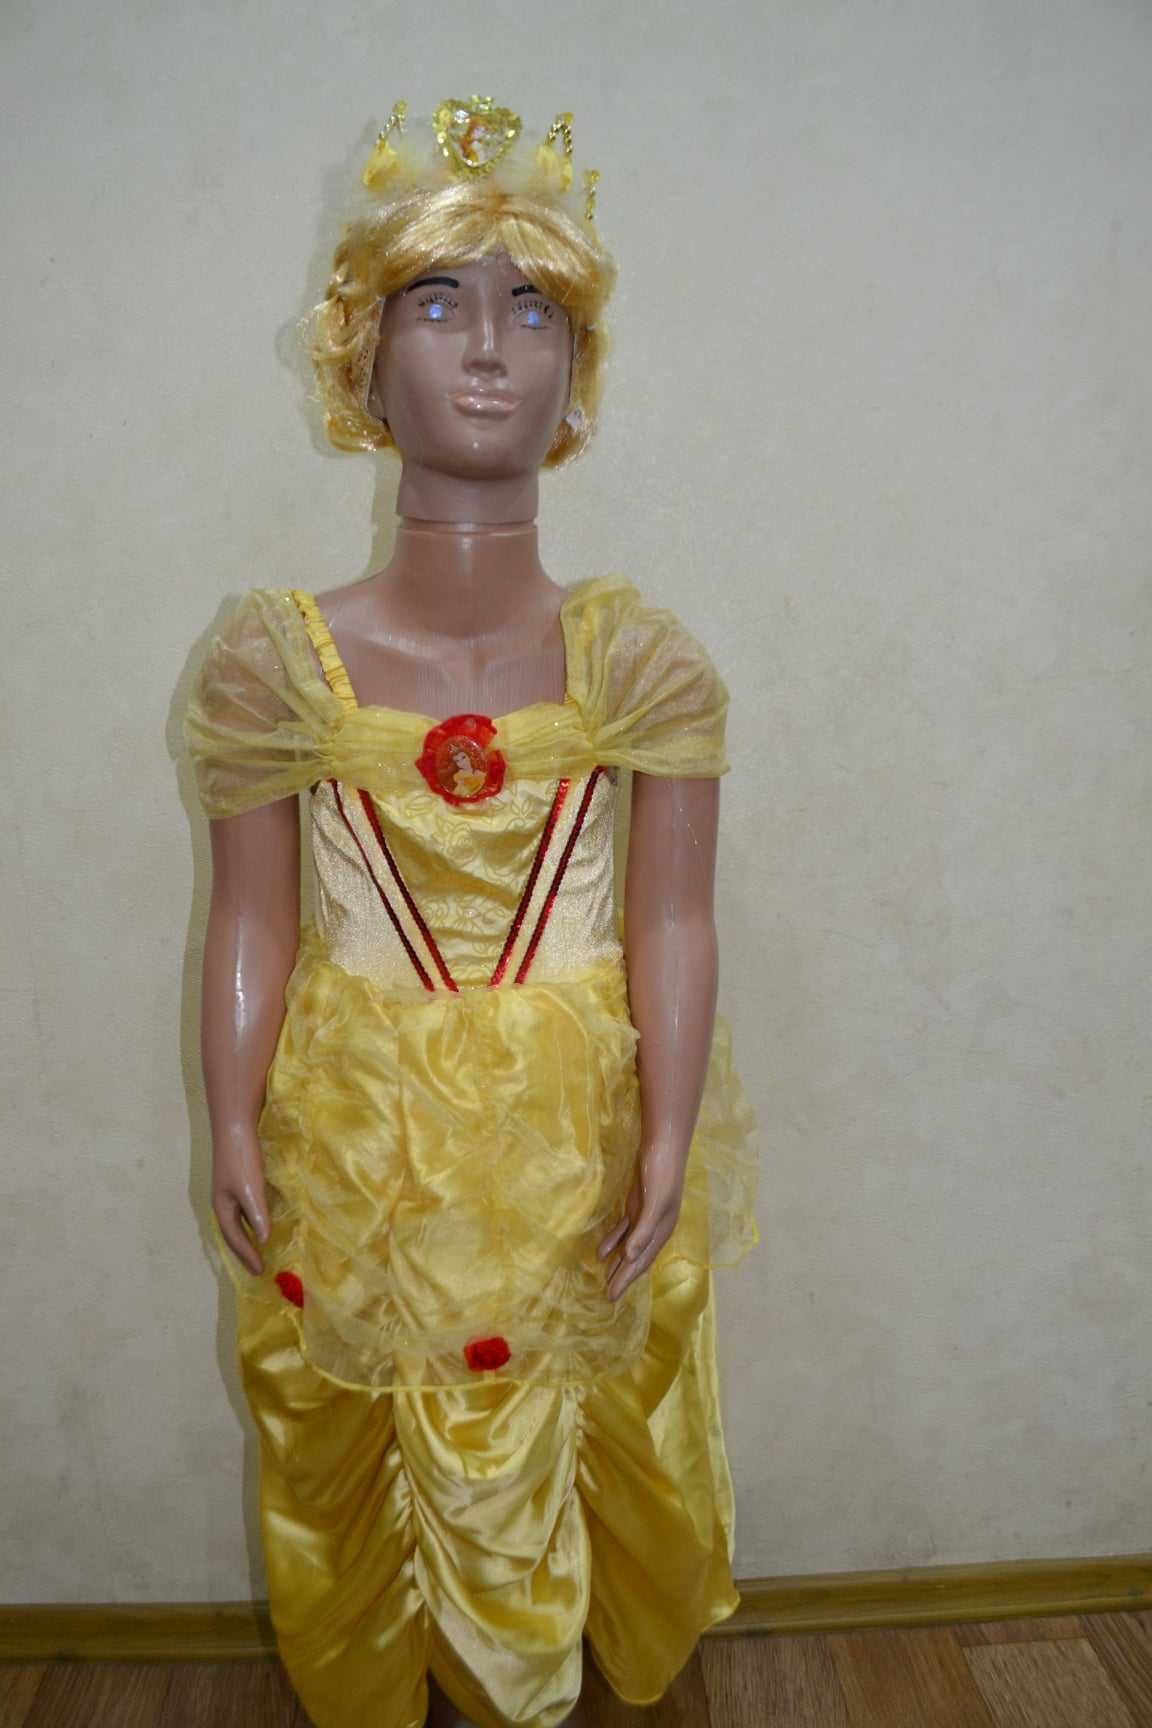 продам платье принцессы Бель из м/ф красавица и чудовище на 5-6 лет